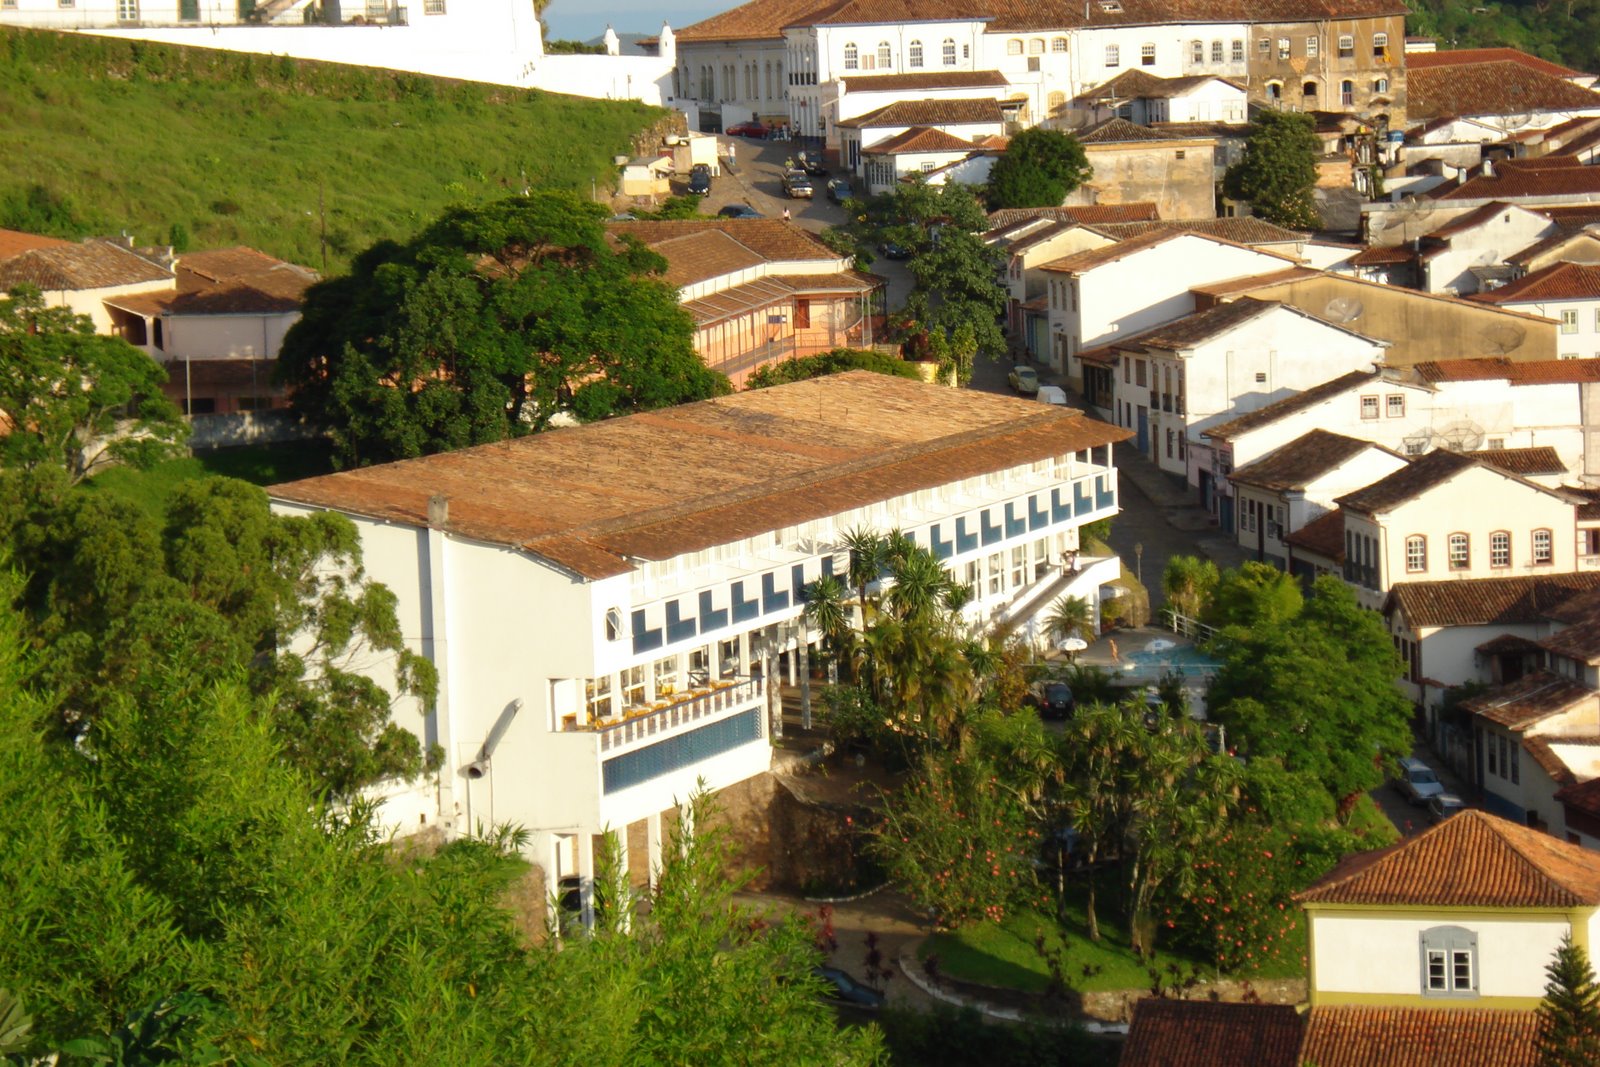 GRANDE HOTEL de Ouro Preto